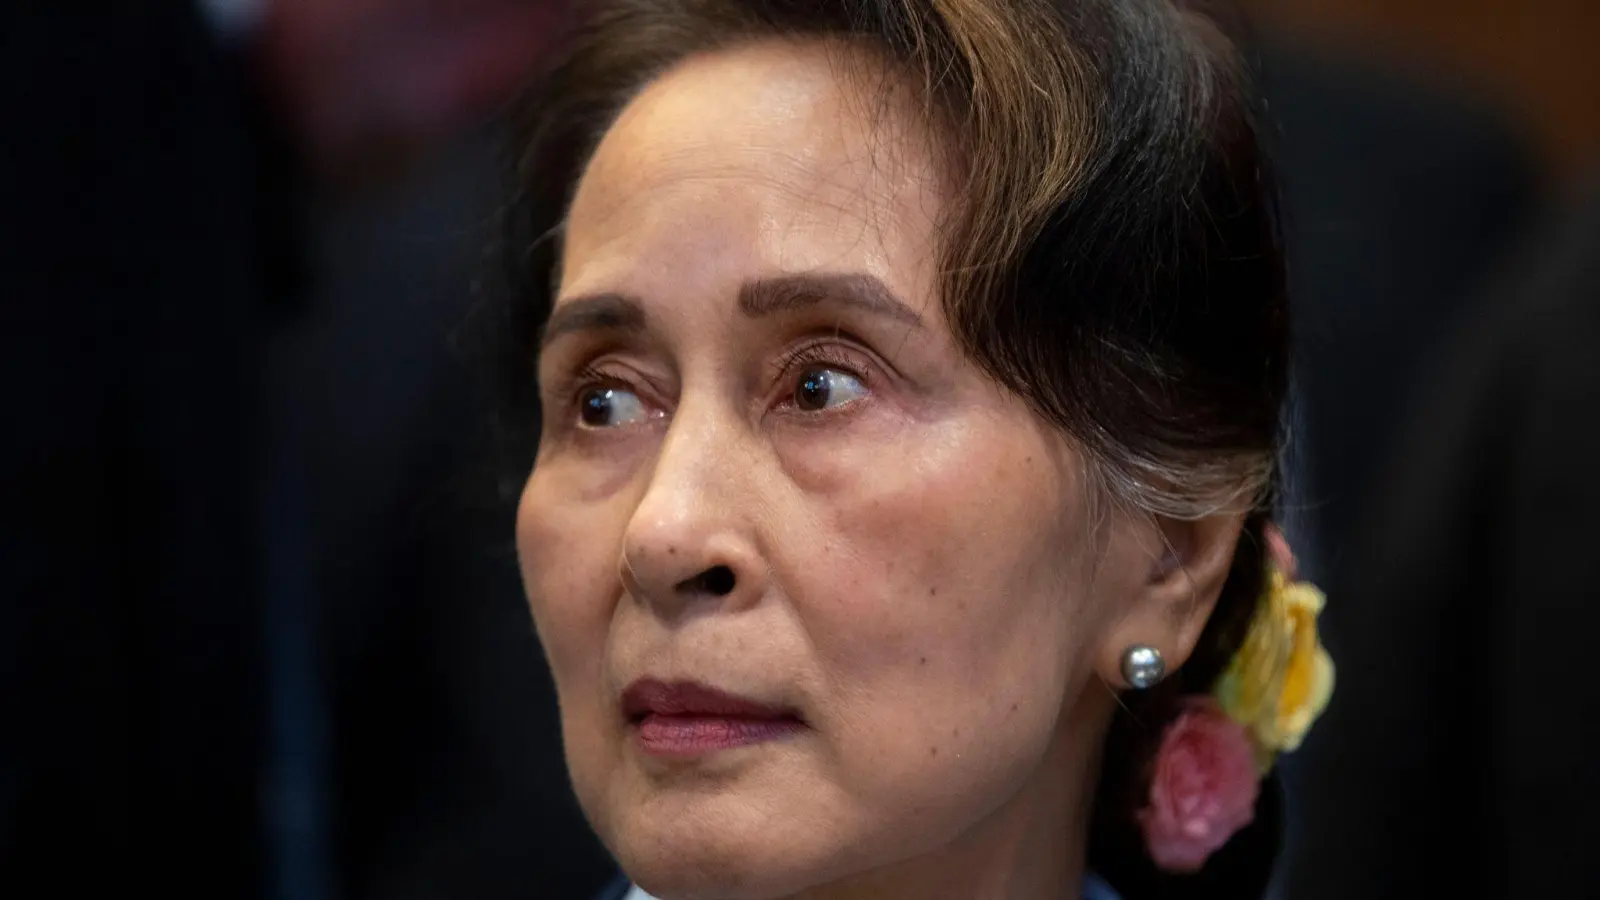 Myanmars entmachtete Regierungschefin Aung San Suu Kyi erhielt 1991 für ihren Einsatz gegen Unterdrückung und soziale Ungerechtigkeit den Friedensnobelpreis. (Foto: Peter Dejong/AP/dpa/Archiv)